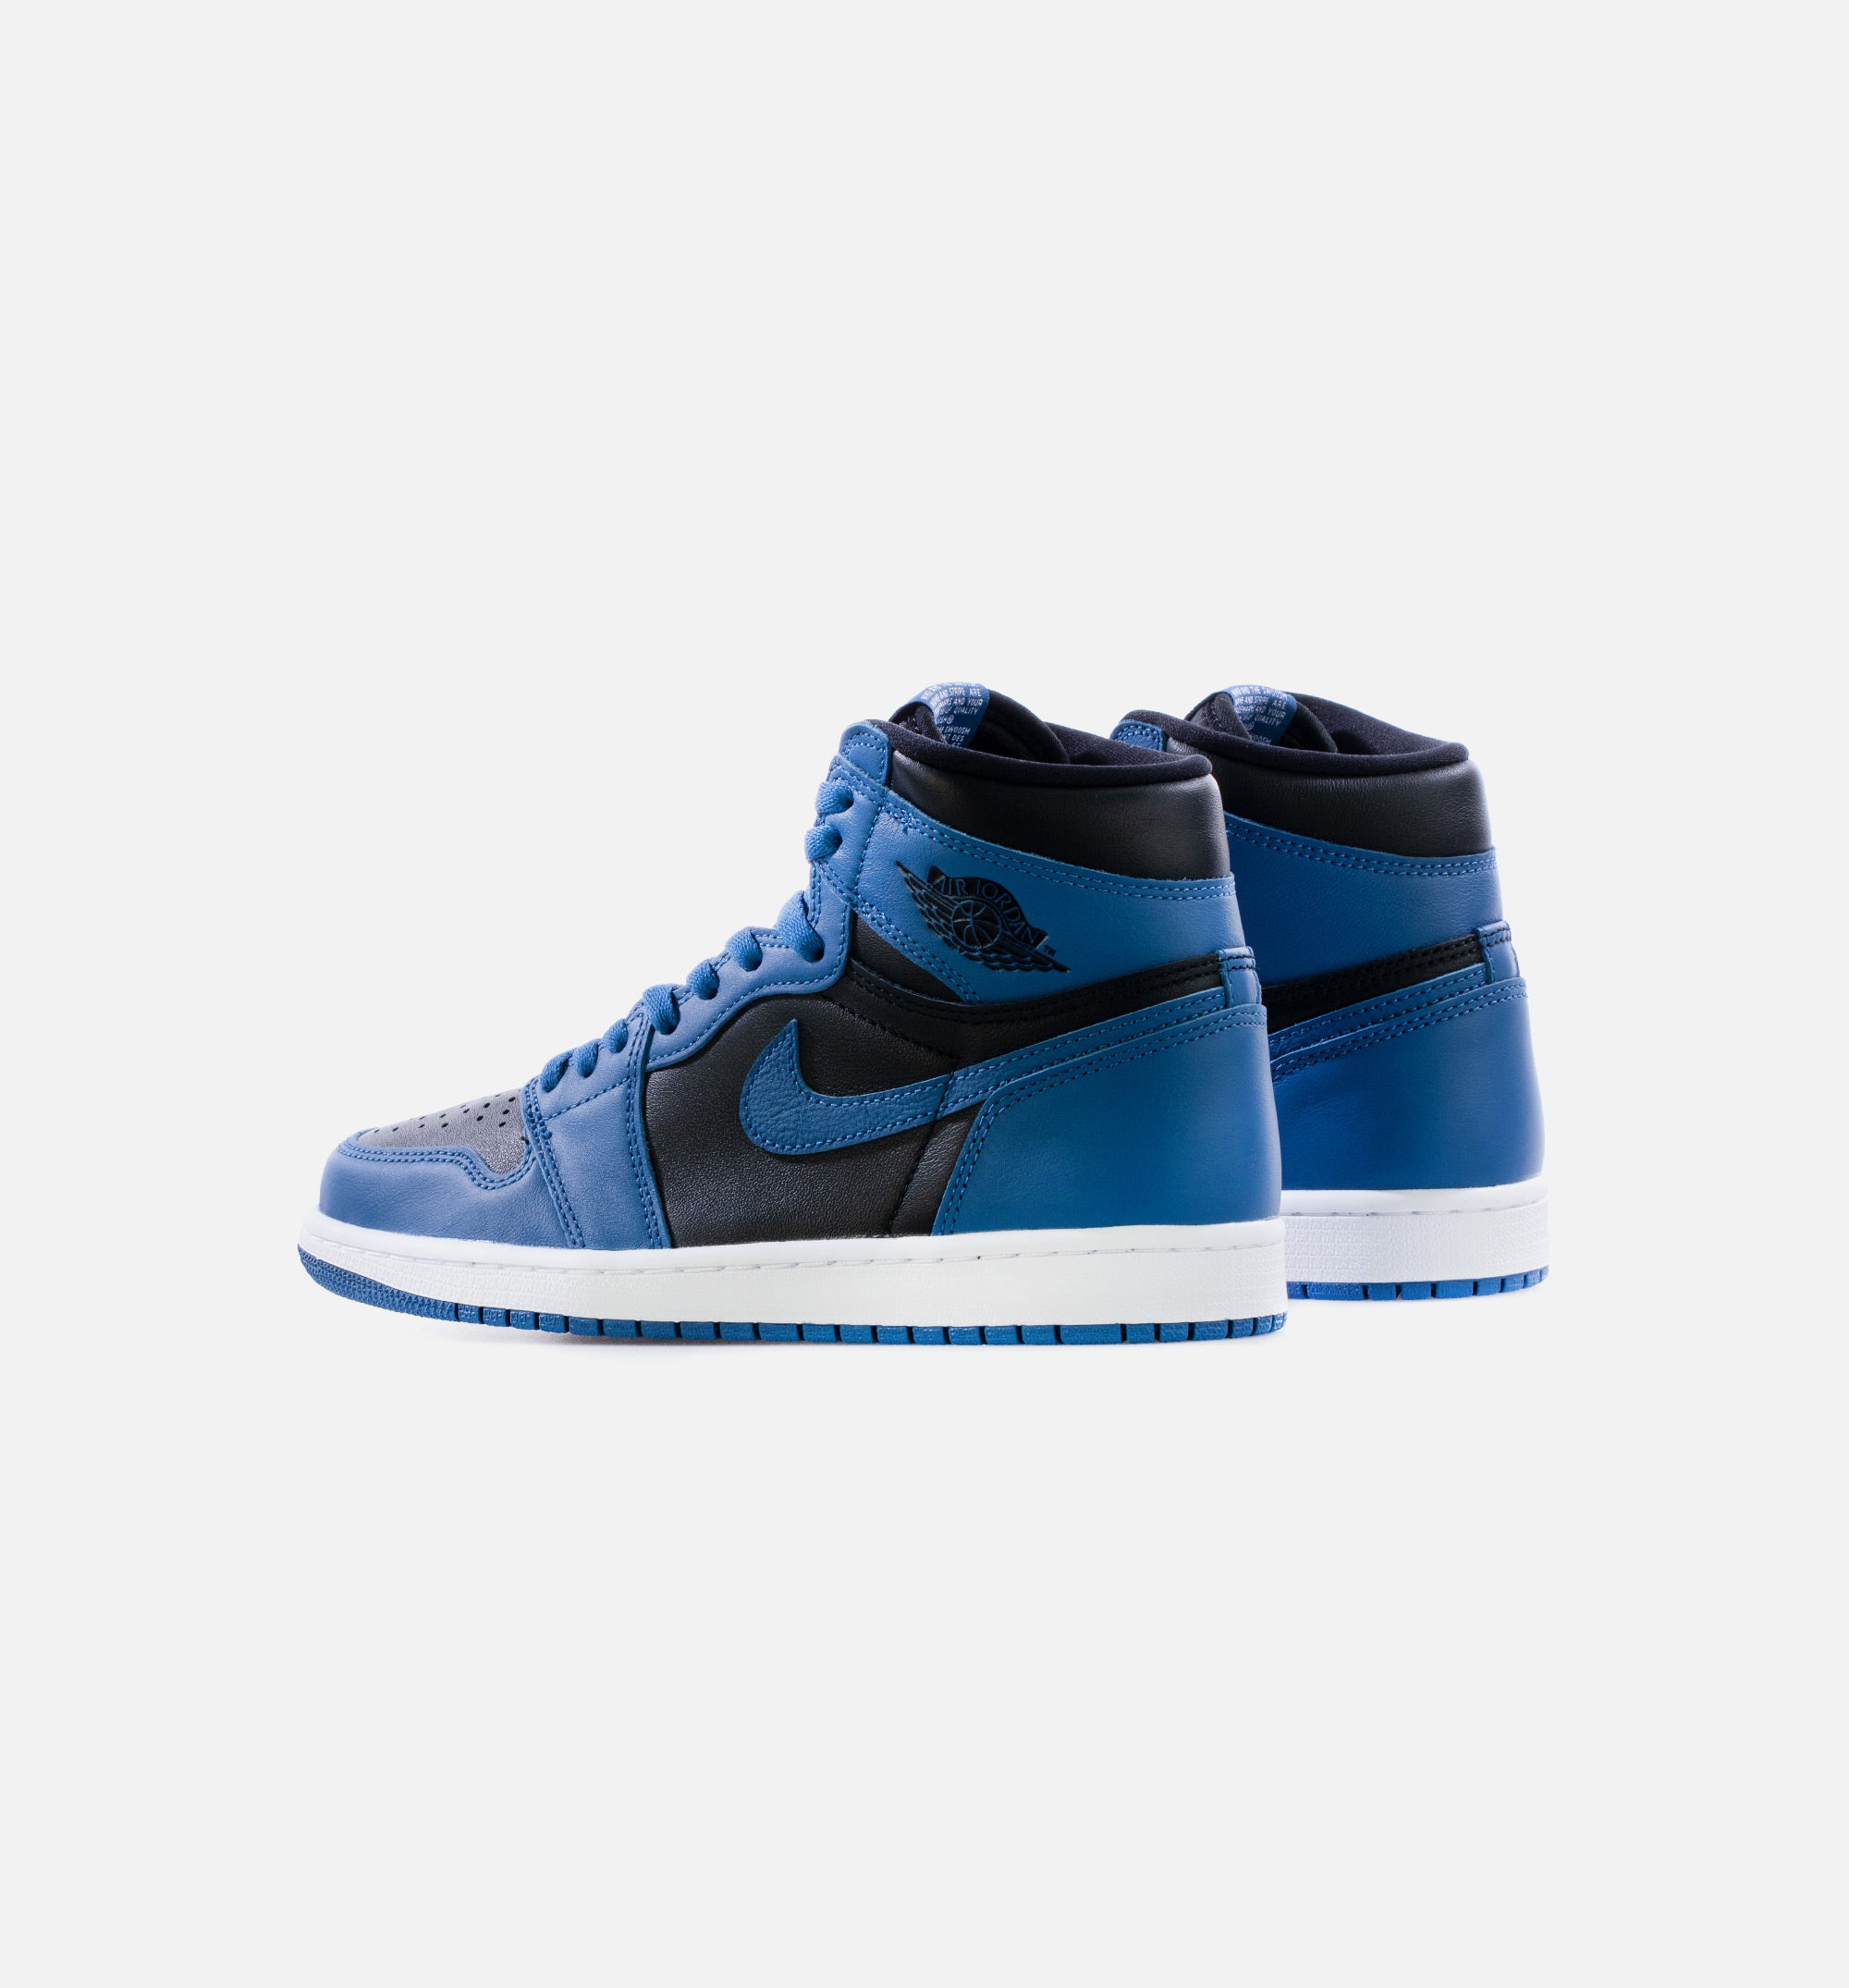 Nike Air Jordan 1 Retro High OG Dark Marina Blue Shoes 555088-404